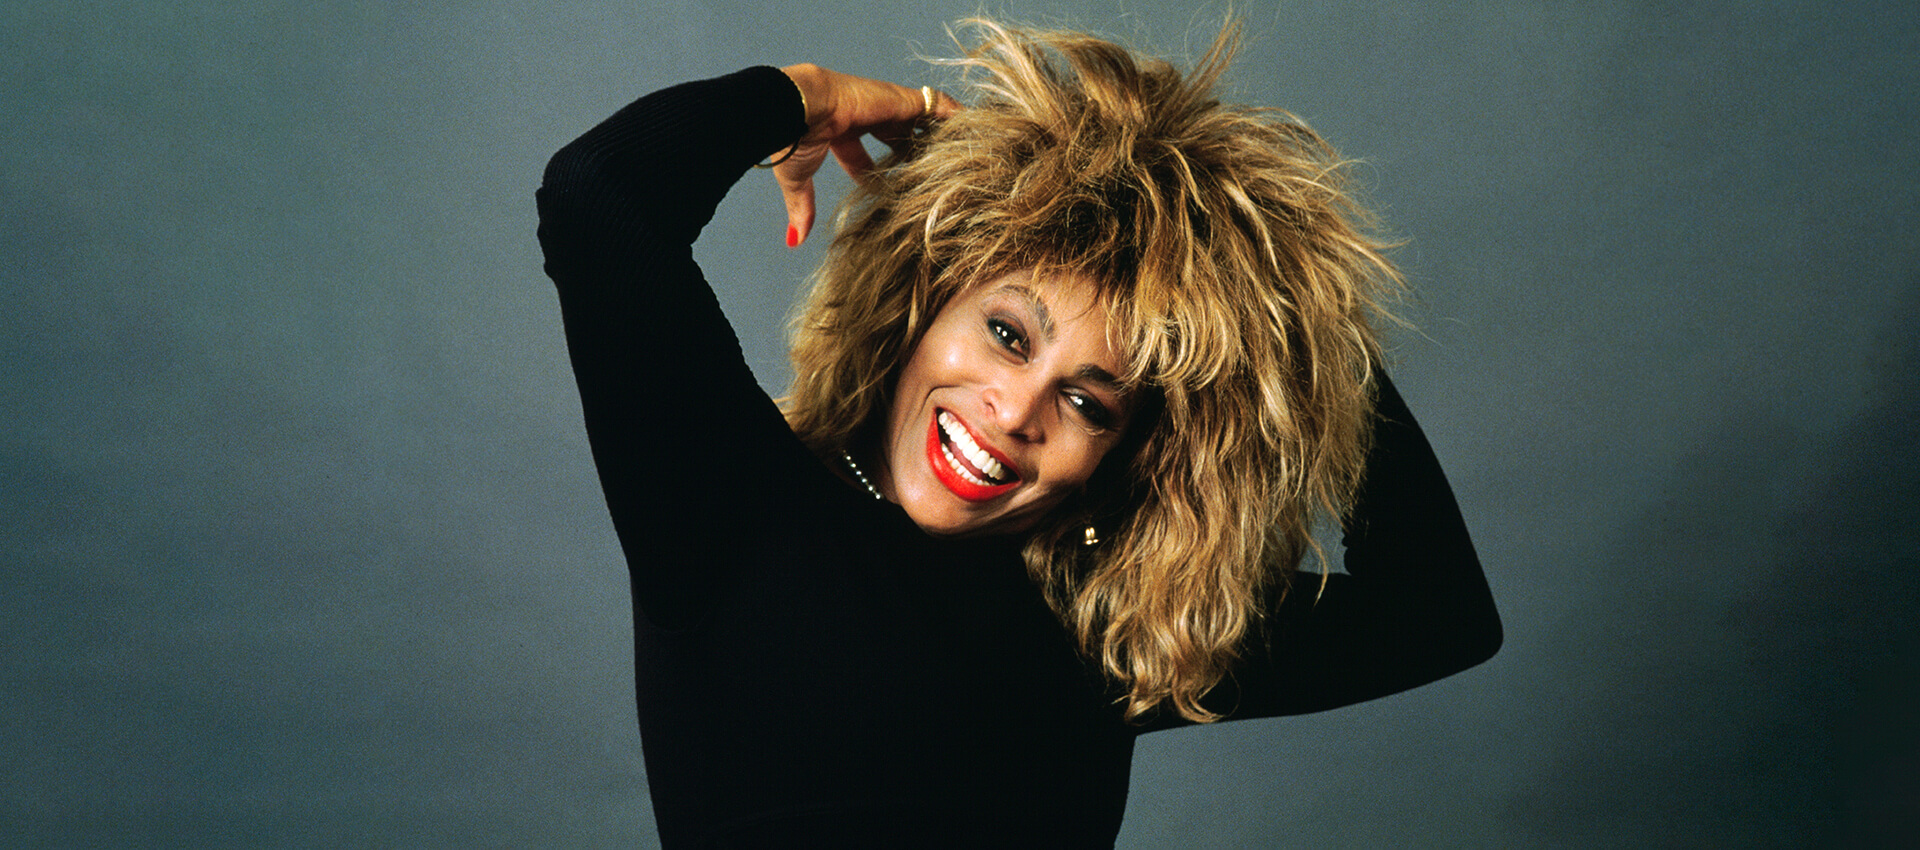 Tina Turner: cómo entender su legado desde lo latino